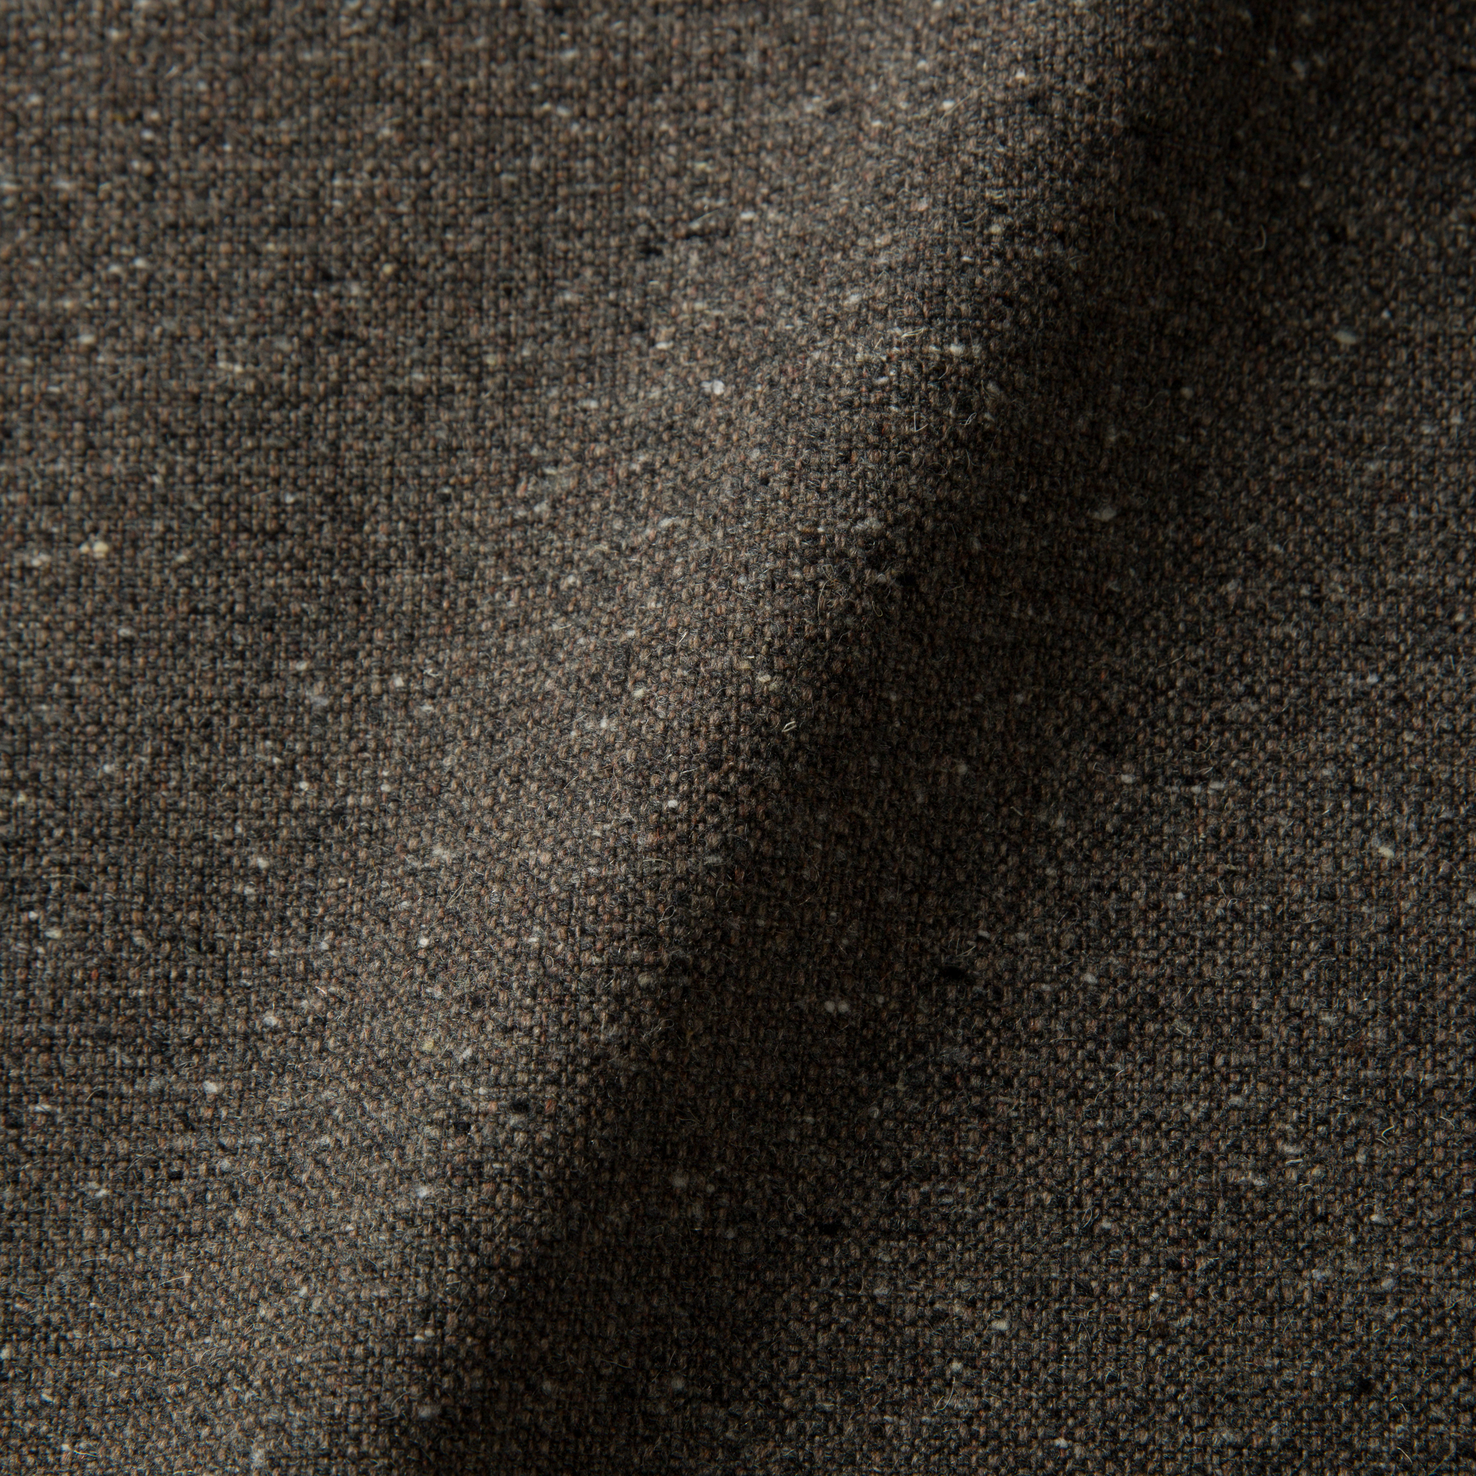 Fabric sample Solis Crust brown